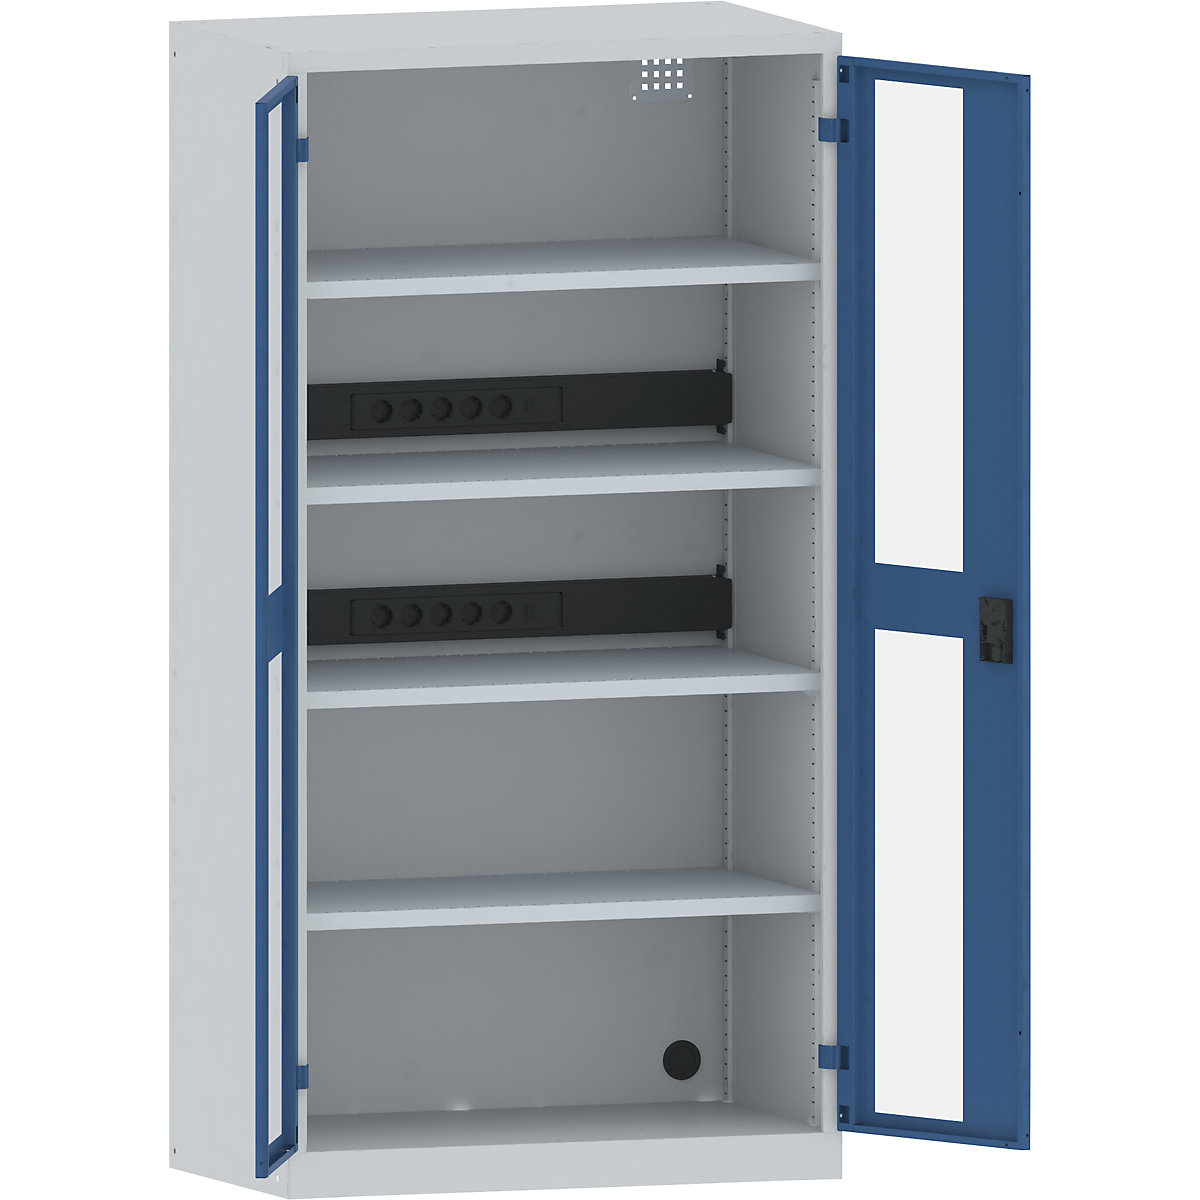 Omara za polnjenje akumulatorjev – LISTA, 4 police, vrata s šipo, 2 letvi za napeljavo na zadnji strani, sive / modre barve-5